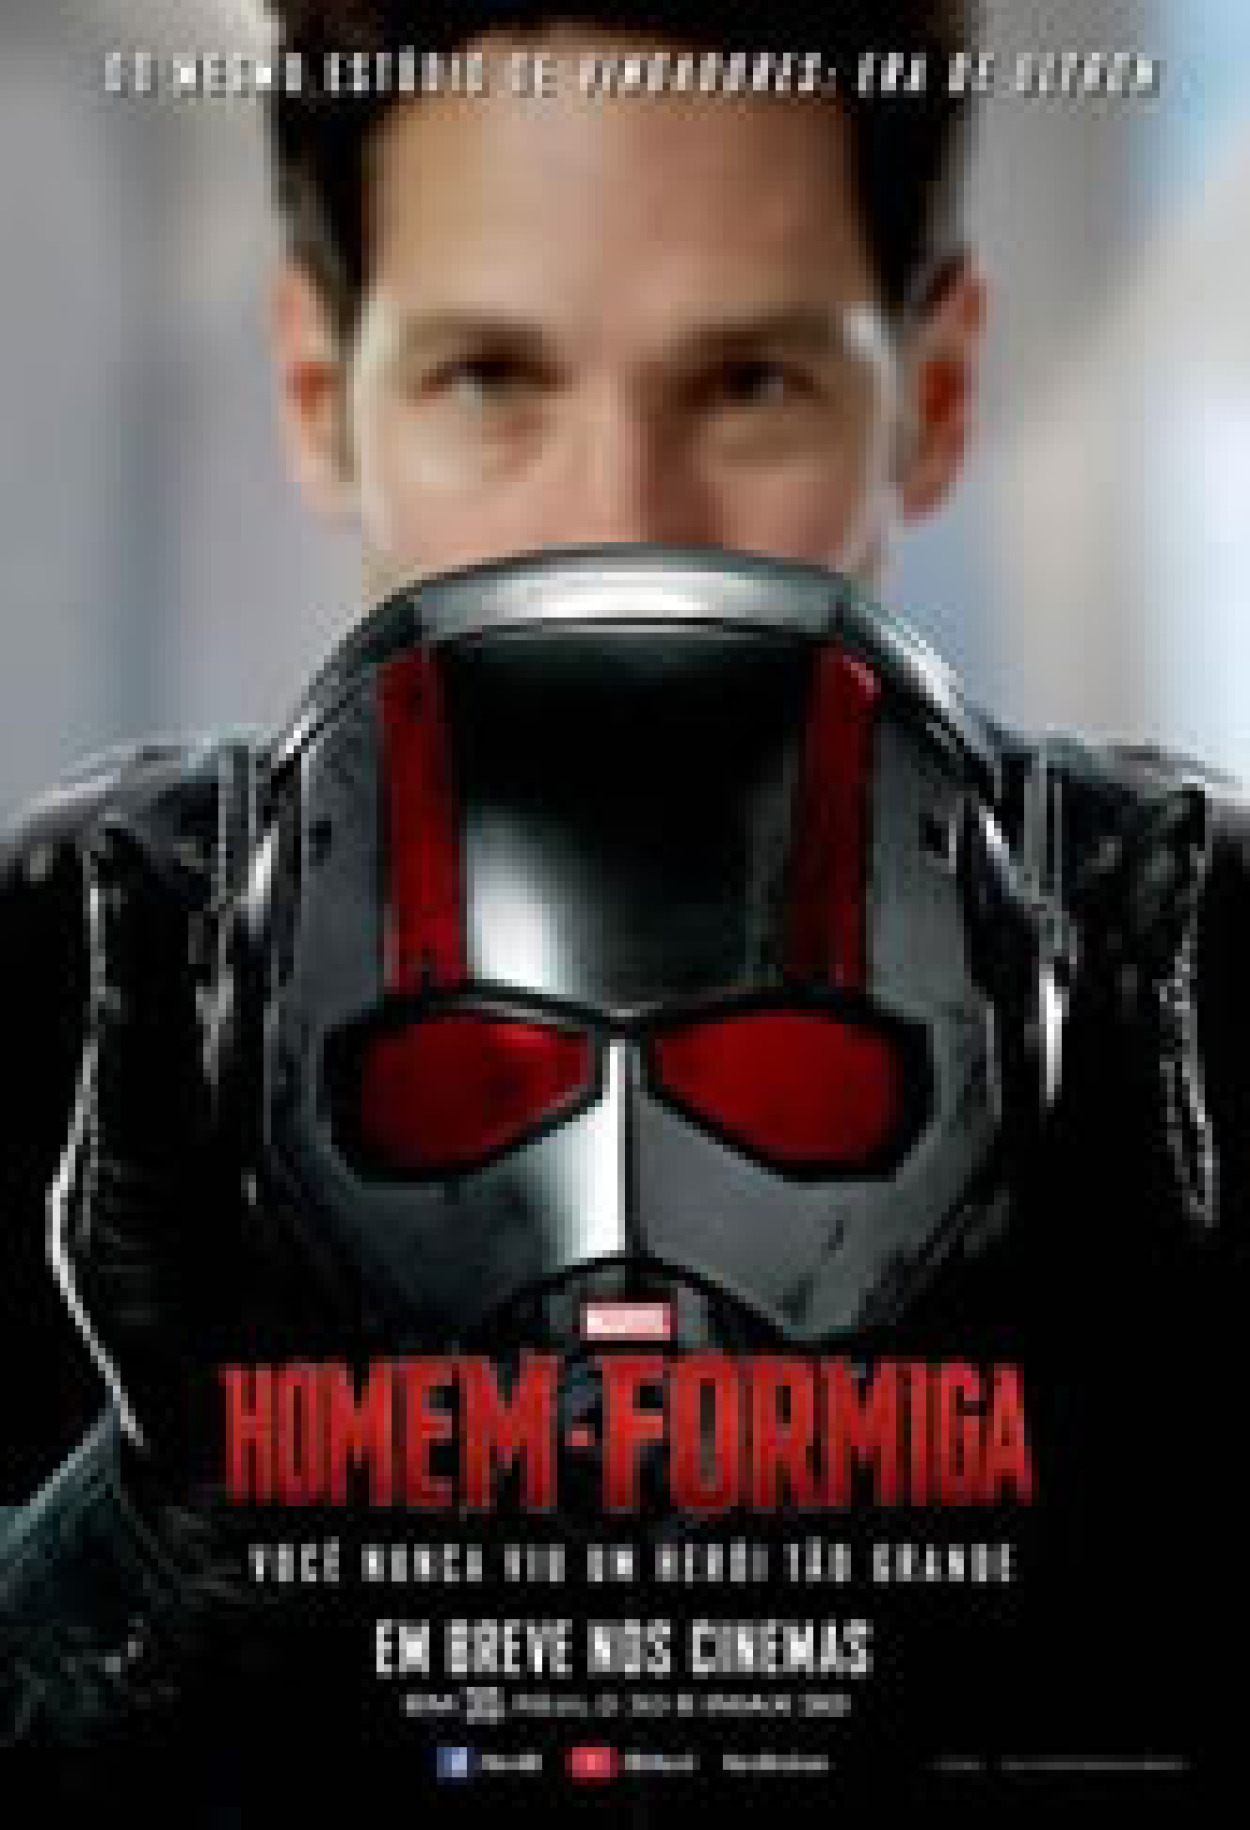 Cartazes de Homem-Formiga 3 apresentam os heróis do filme - DO POVO